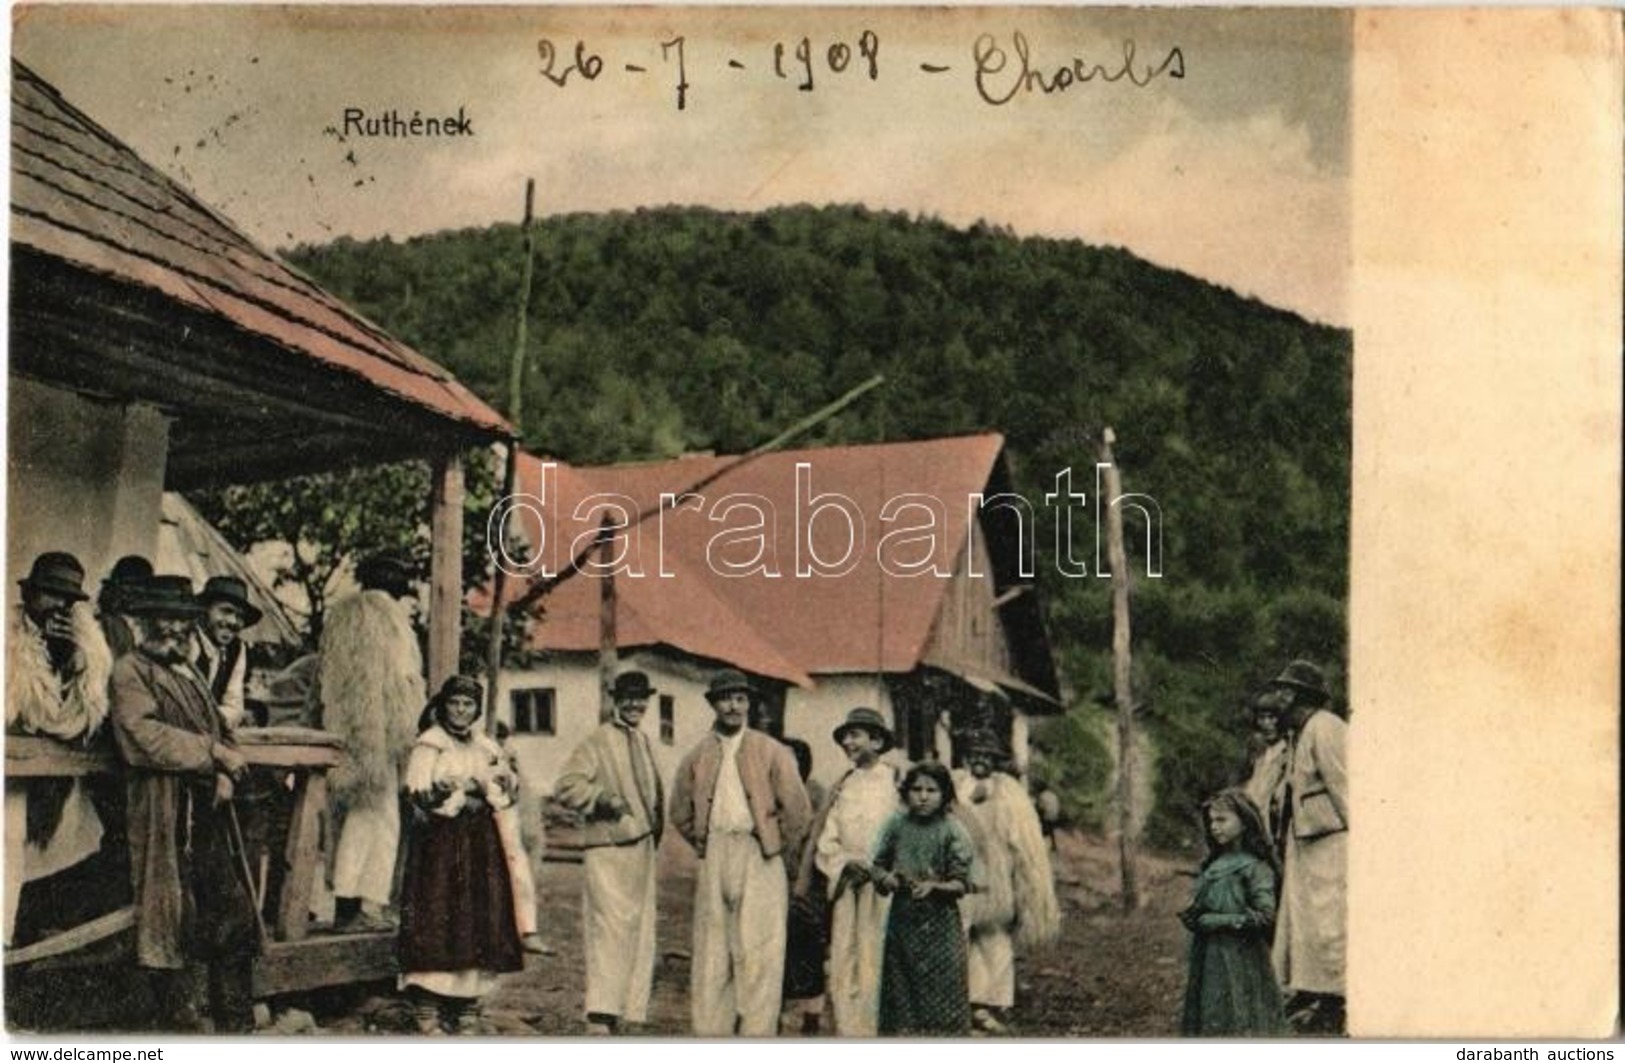 T2 1908 Ruthének, Rutének (ruszinok) A Faluban / Rusyns In The Village, Folklore - Unclassified